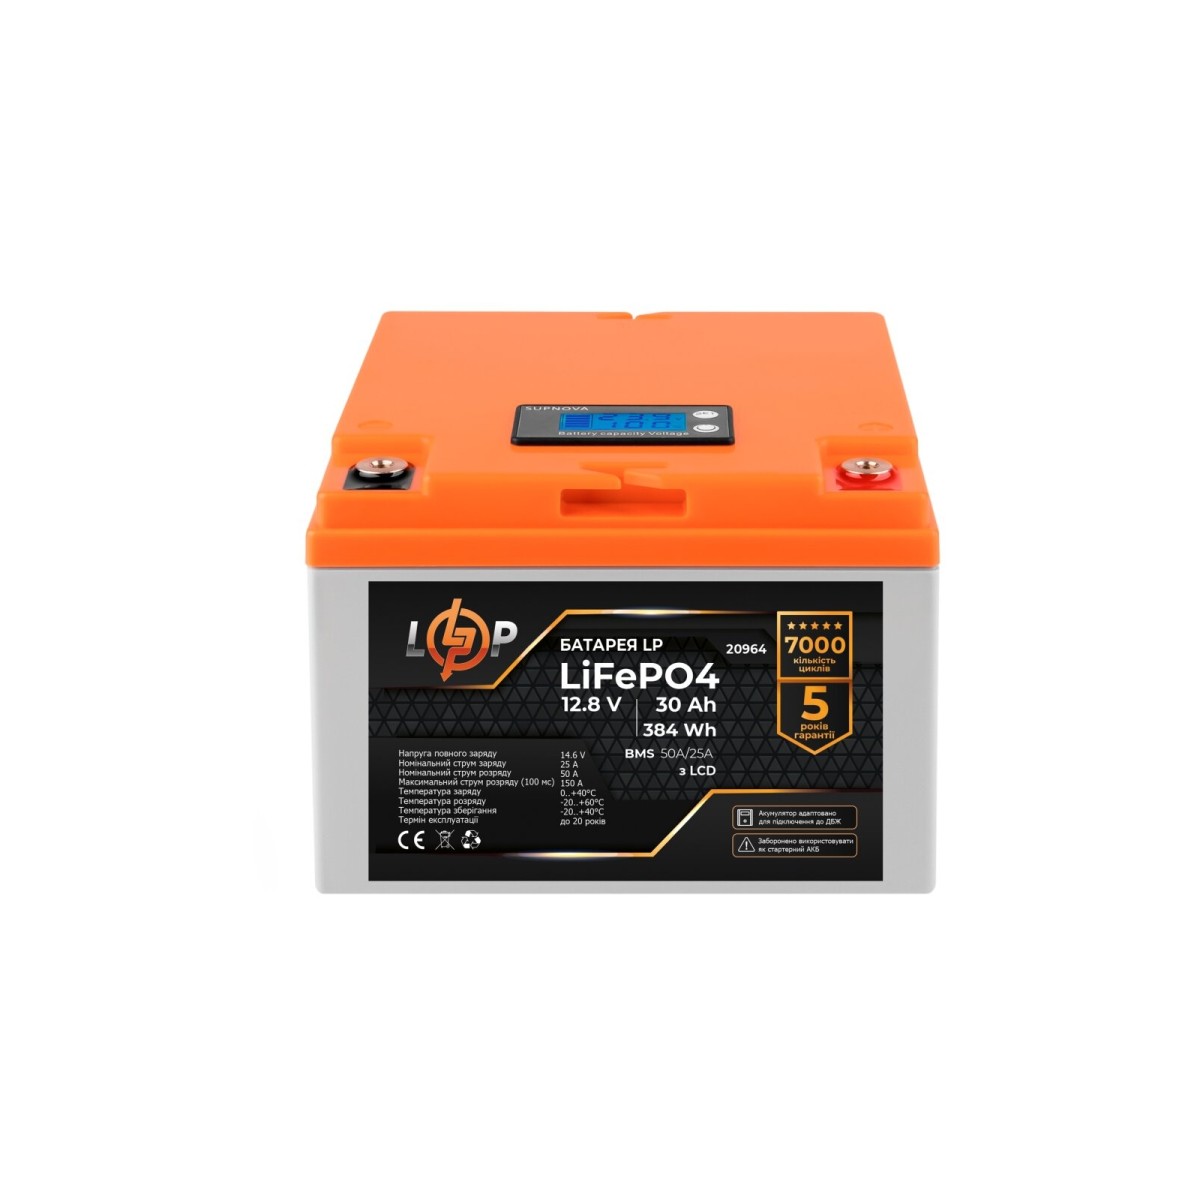 Акумулятор LP LiFePO4 для ДБЖ LCD 12V (12,8V) - 30 Ah (384Wh) (BMS 50A/25А) пластик 98_98.jpg